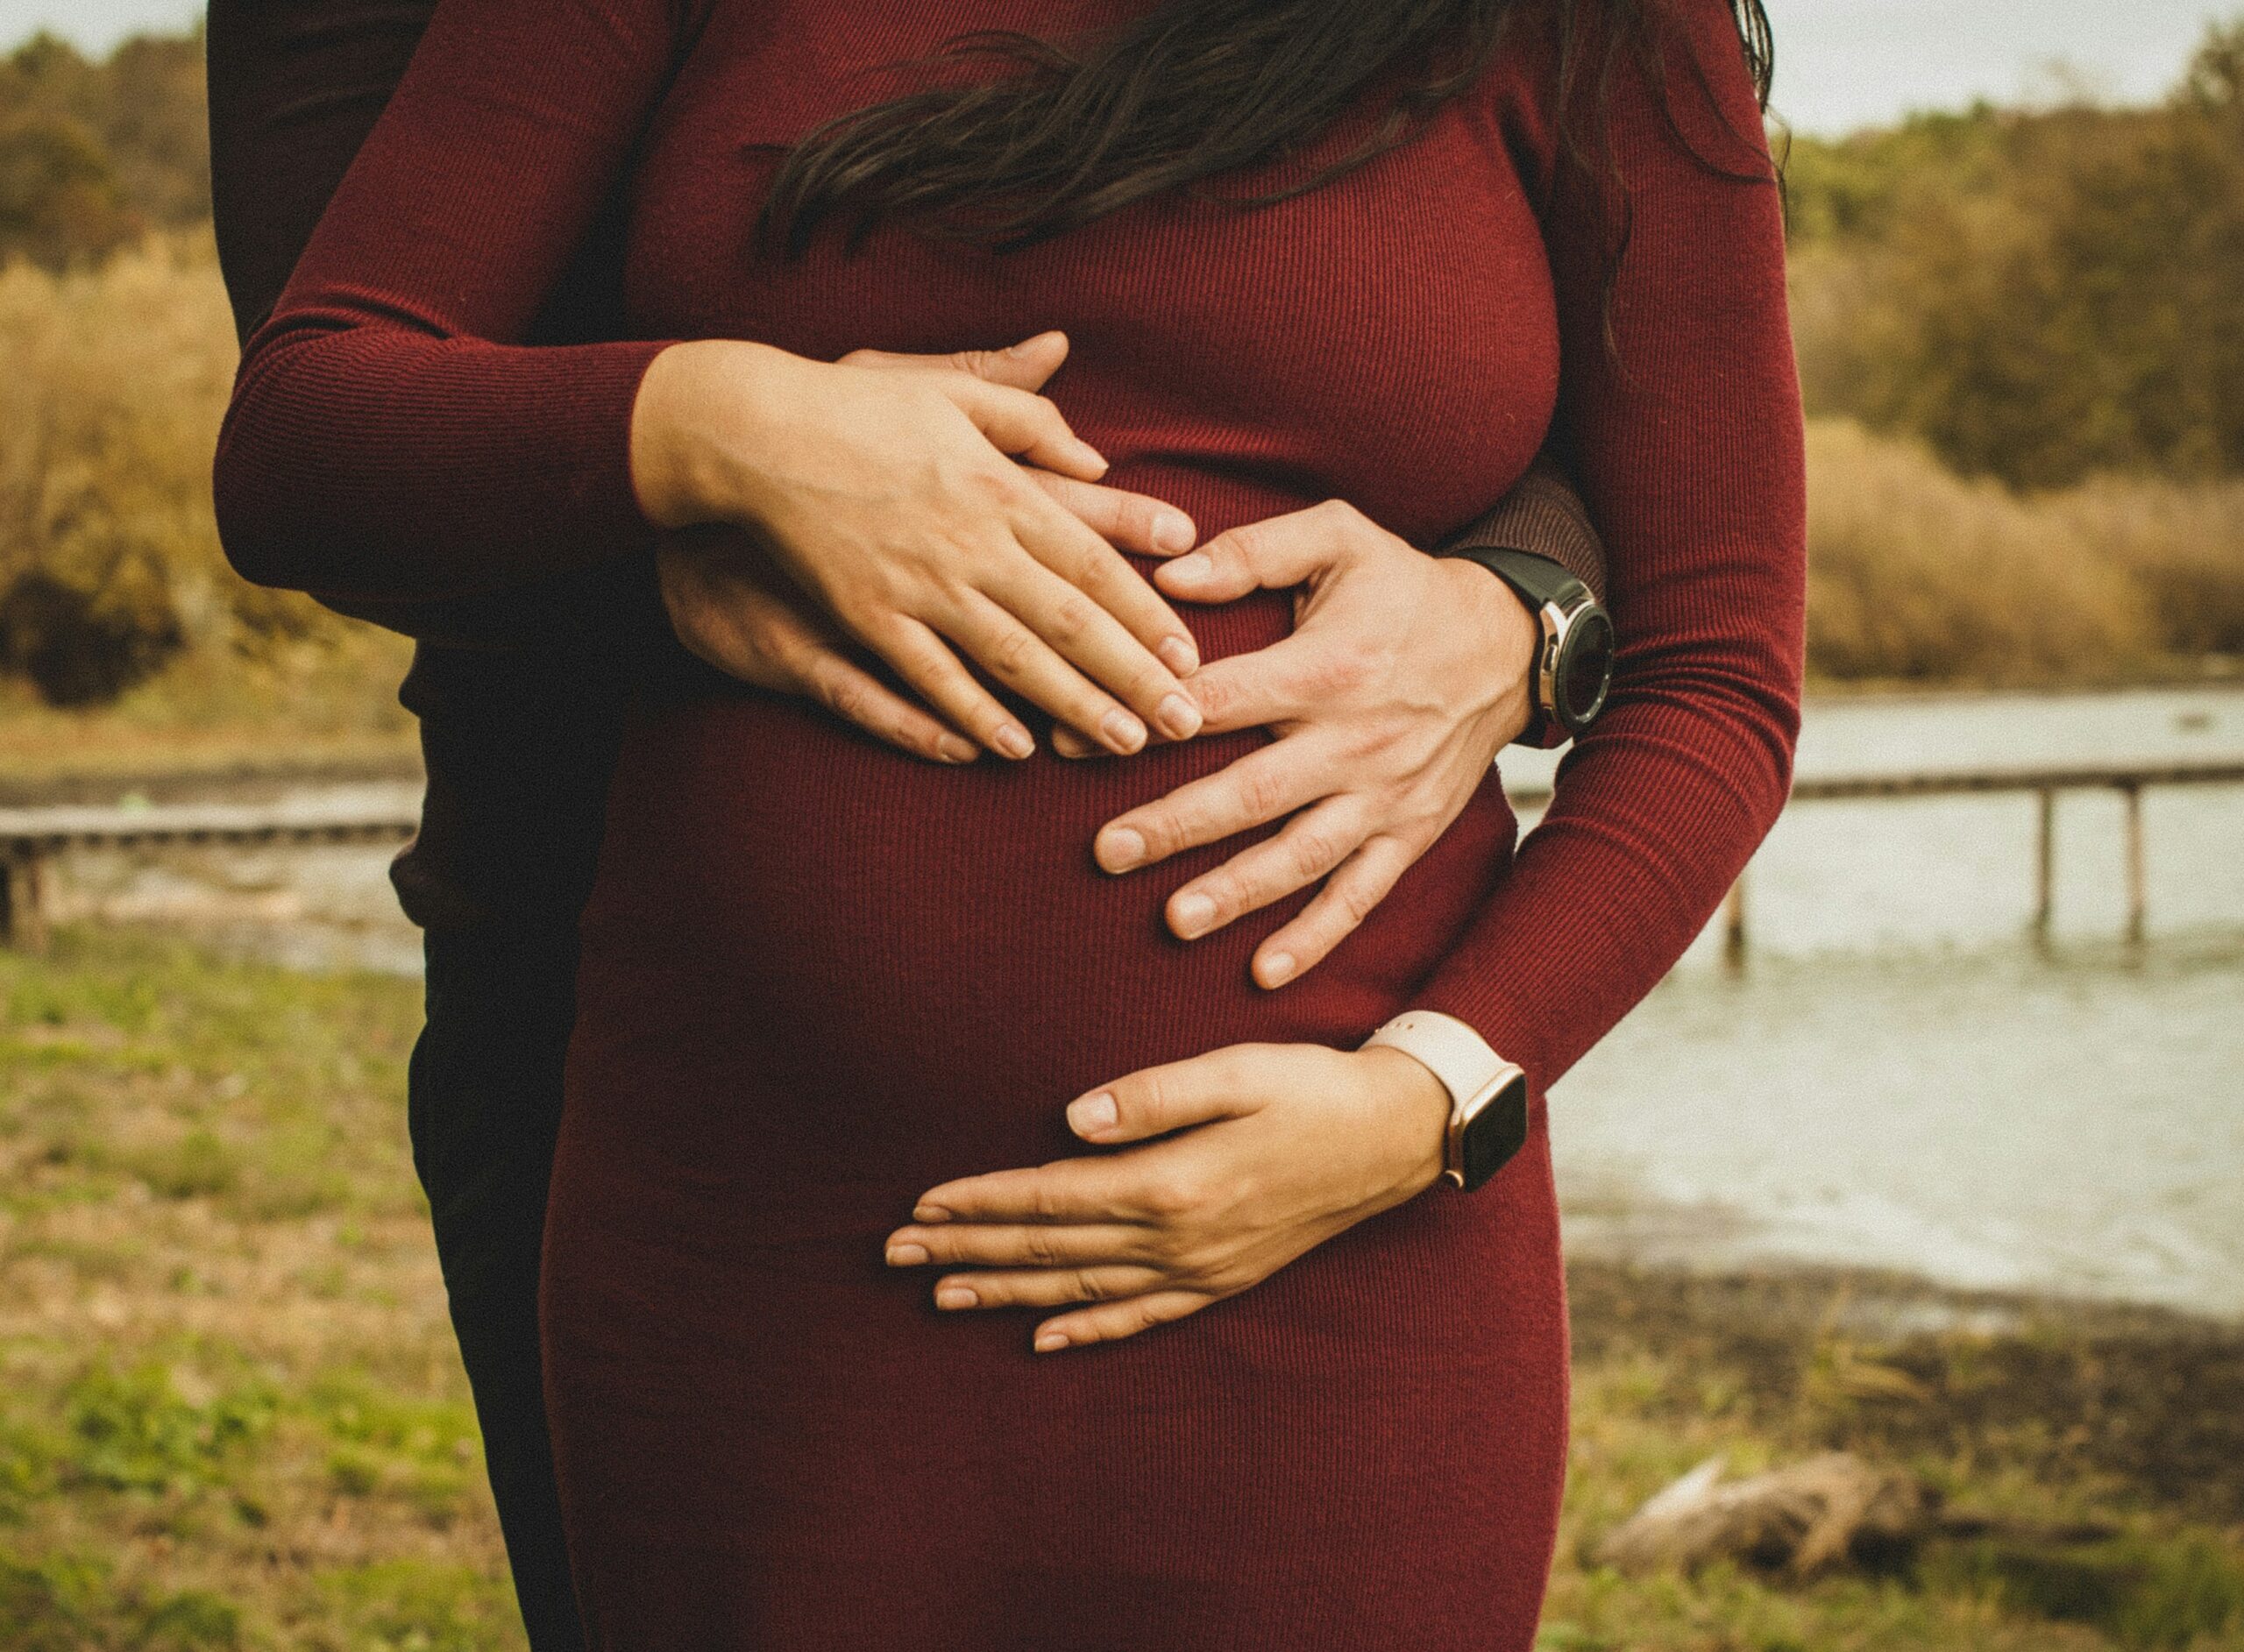 découvrez tout ce qu'il faut savoir sur la fertilité : causes, traitements et conseils pratiques pour optimiser vos chances de conception. informez-vous sur la santé reproductive et les options disponibles pour réaliser votre rêve de parentalité.